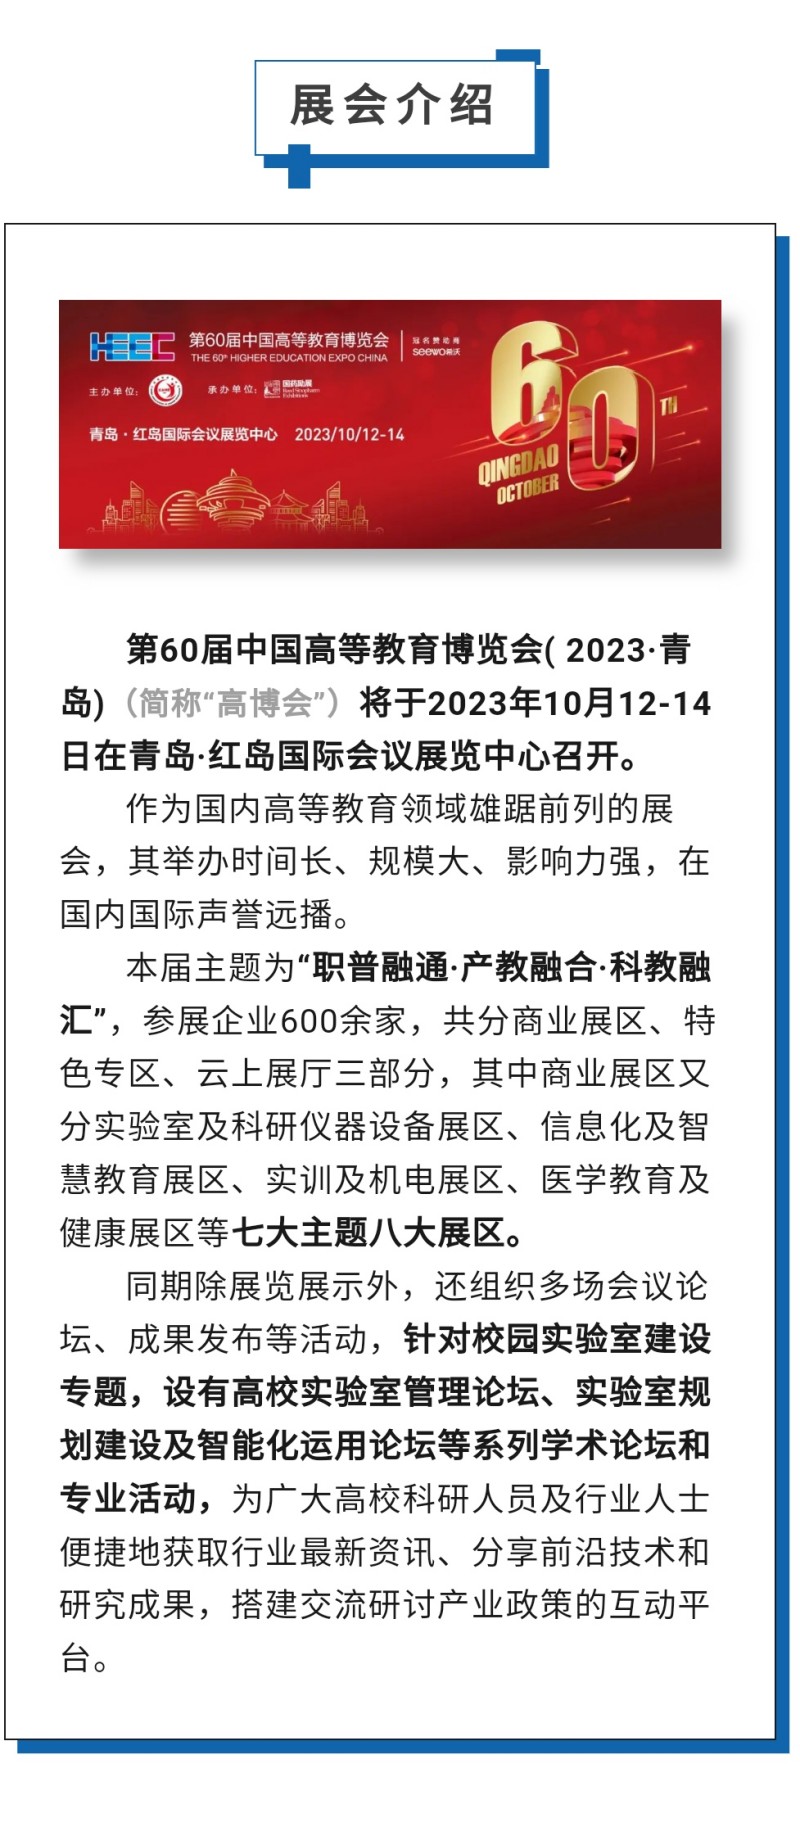 第60届中国高等教育博览会( 2023·青岛)（简称“高博会”）将于2023年10月12-14日在青岛·红岛国际会议展览中心召开。作为国内高等教育领域雄踞前列的展会，其举办时间长、规模大、影响力强，在国内国际声誉远播。